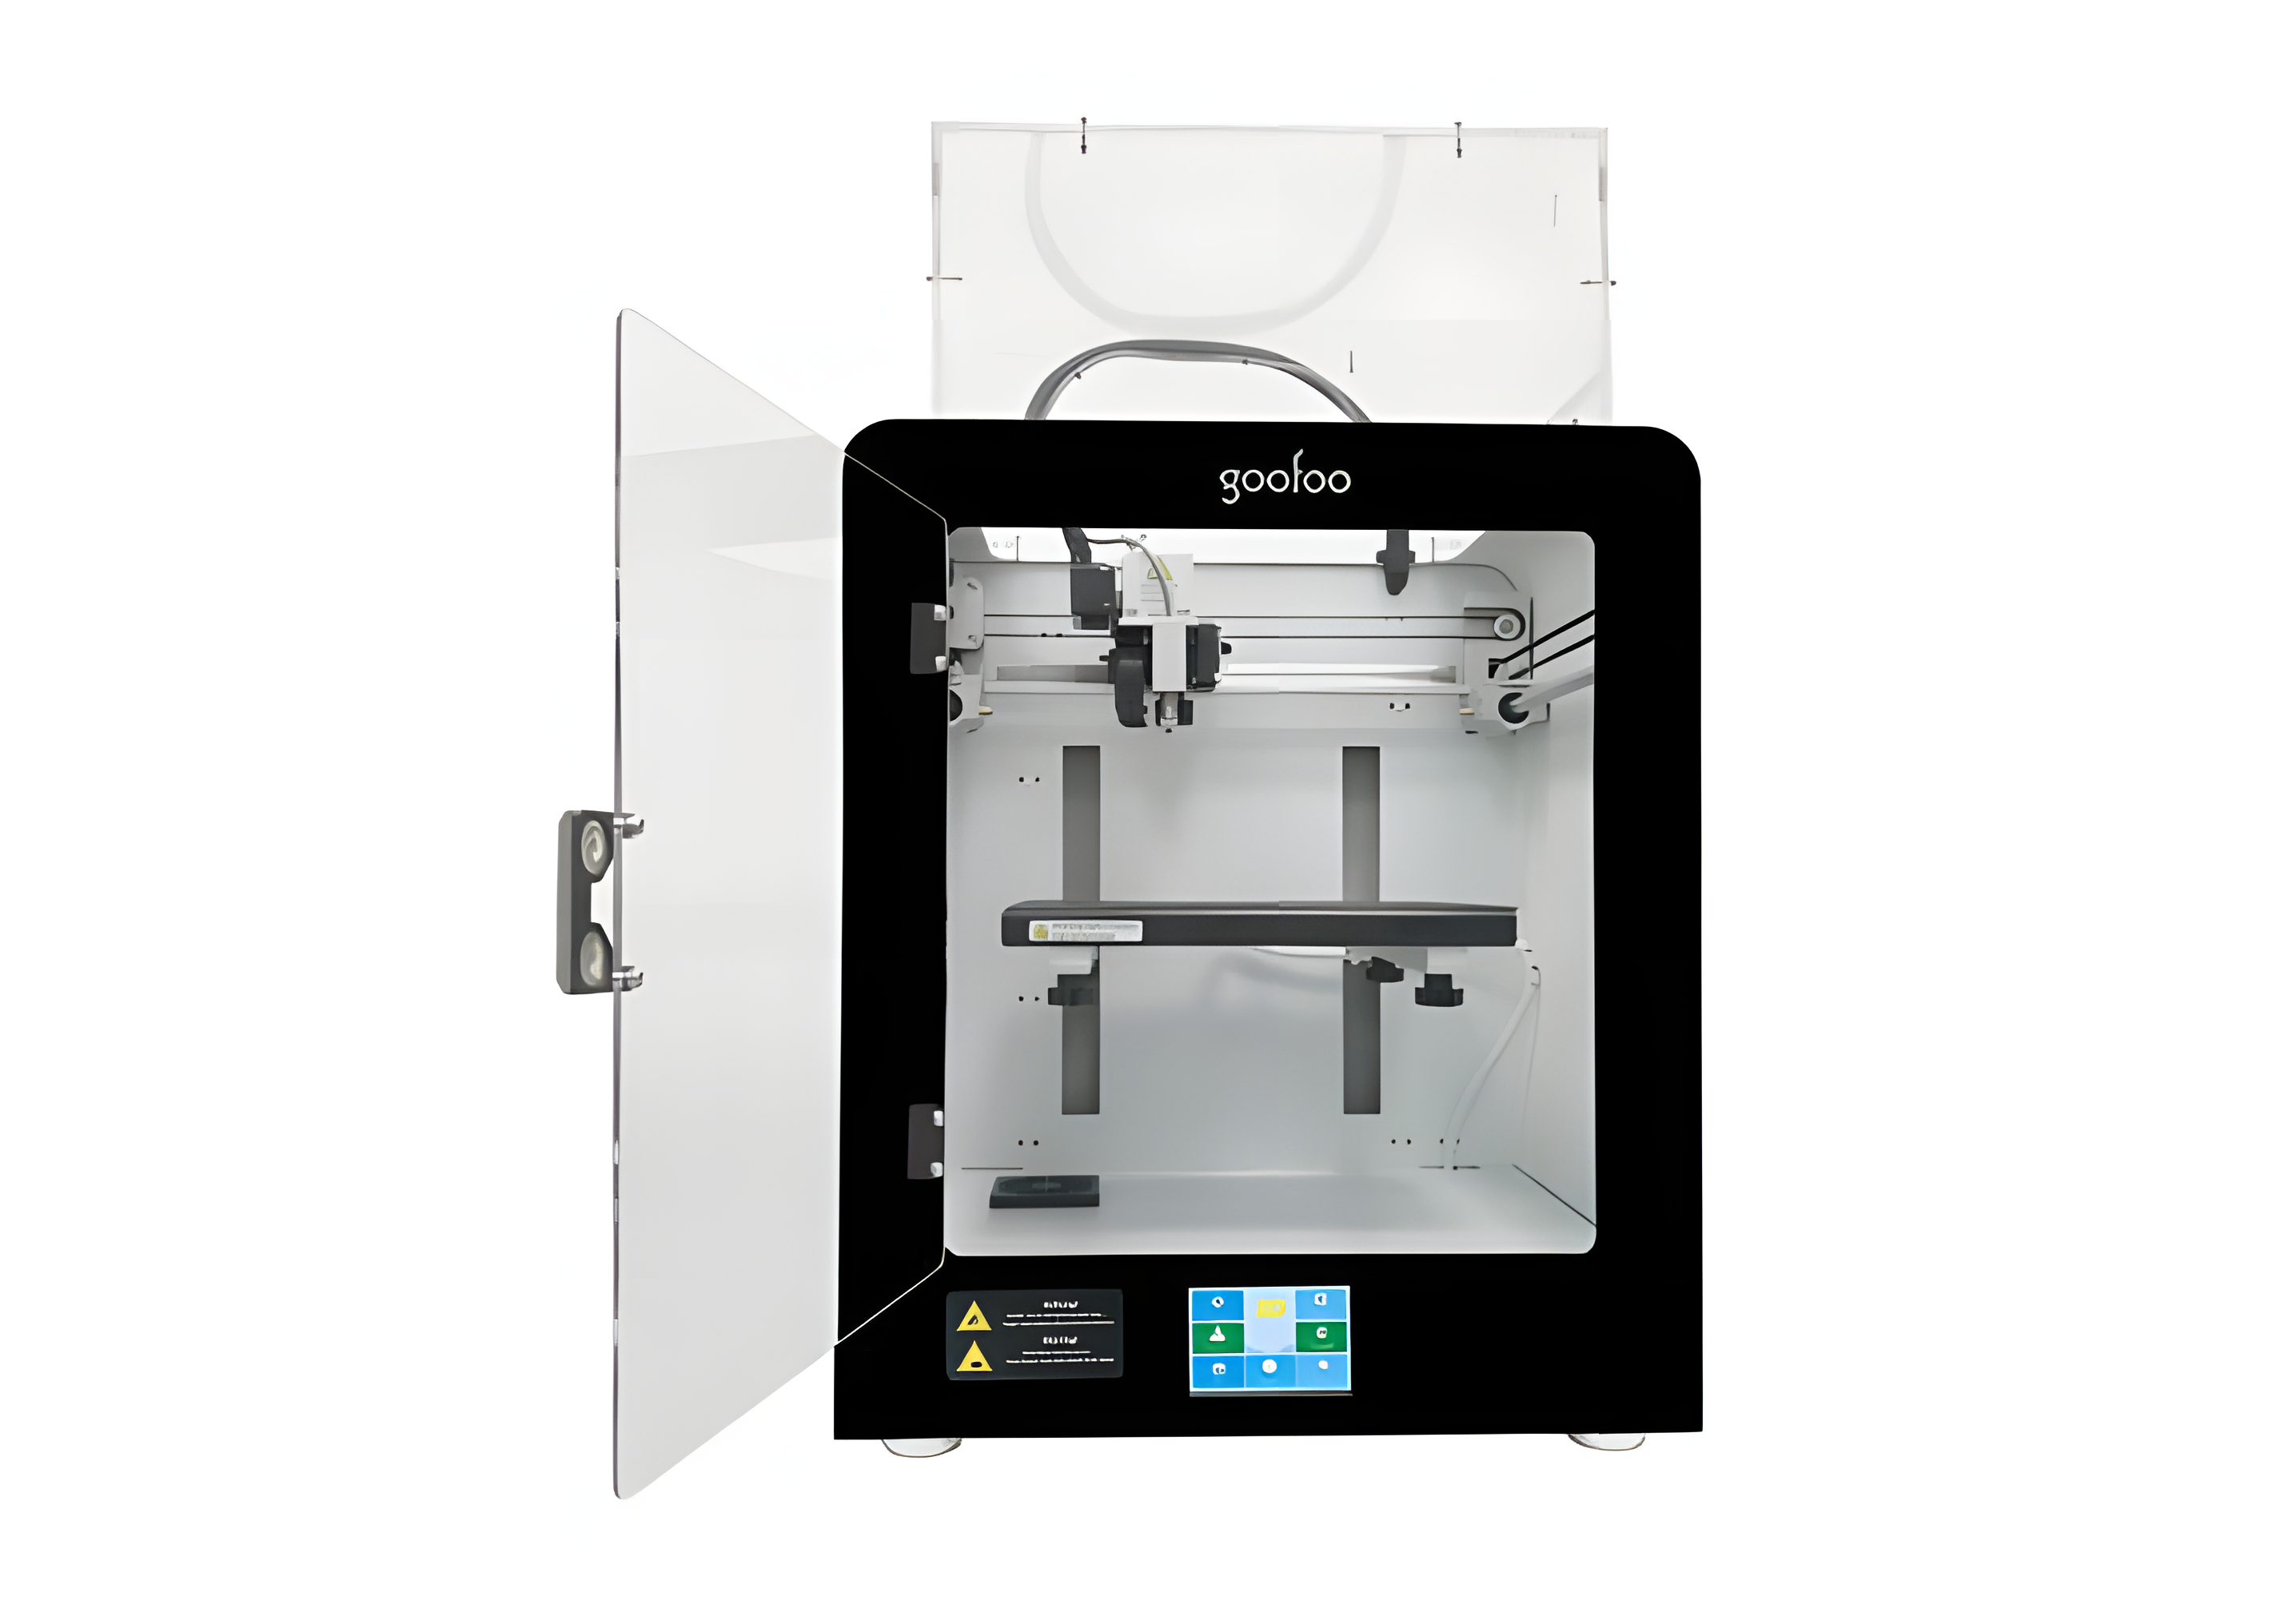 光服科技 专业级3D打印机MIDO 工业机械模型建模打印应用机器